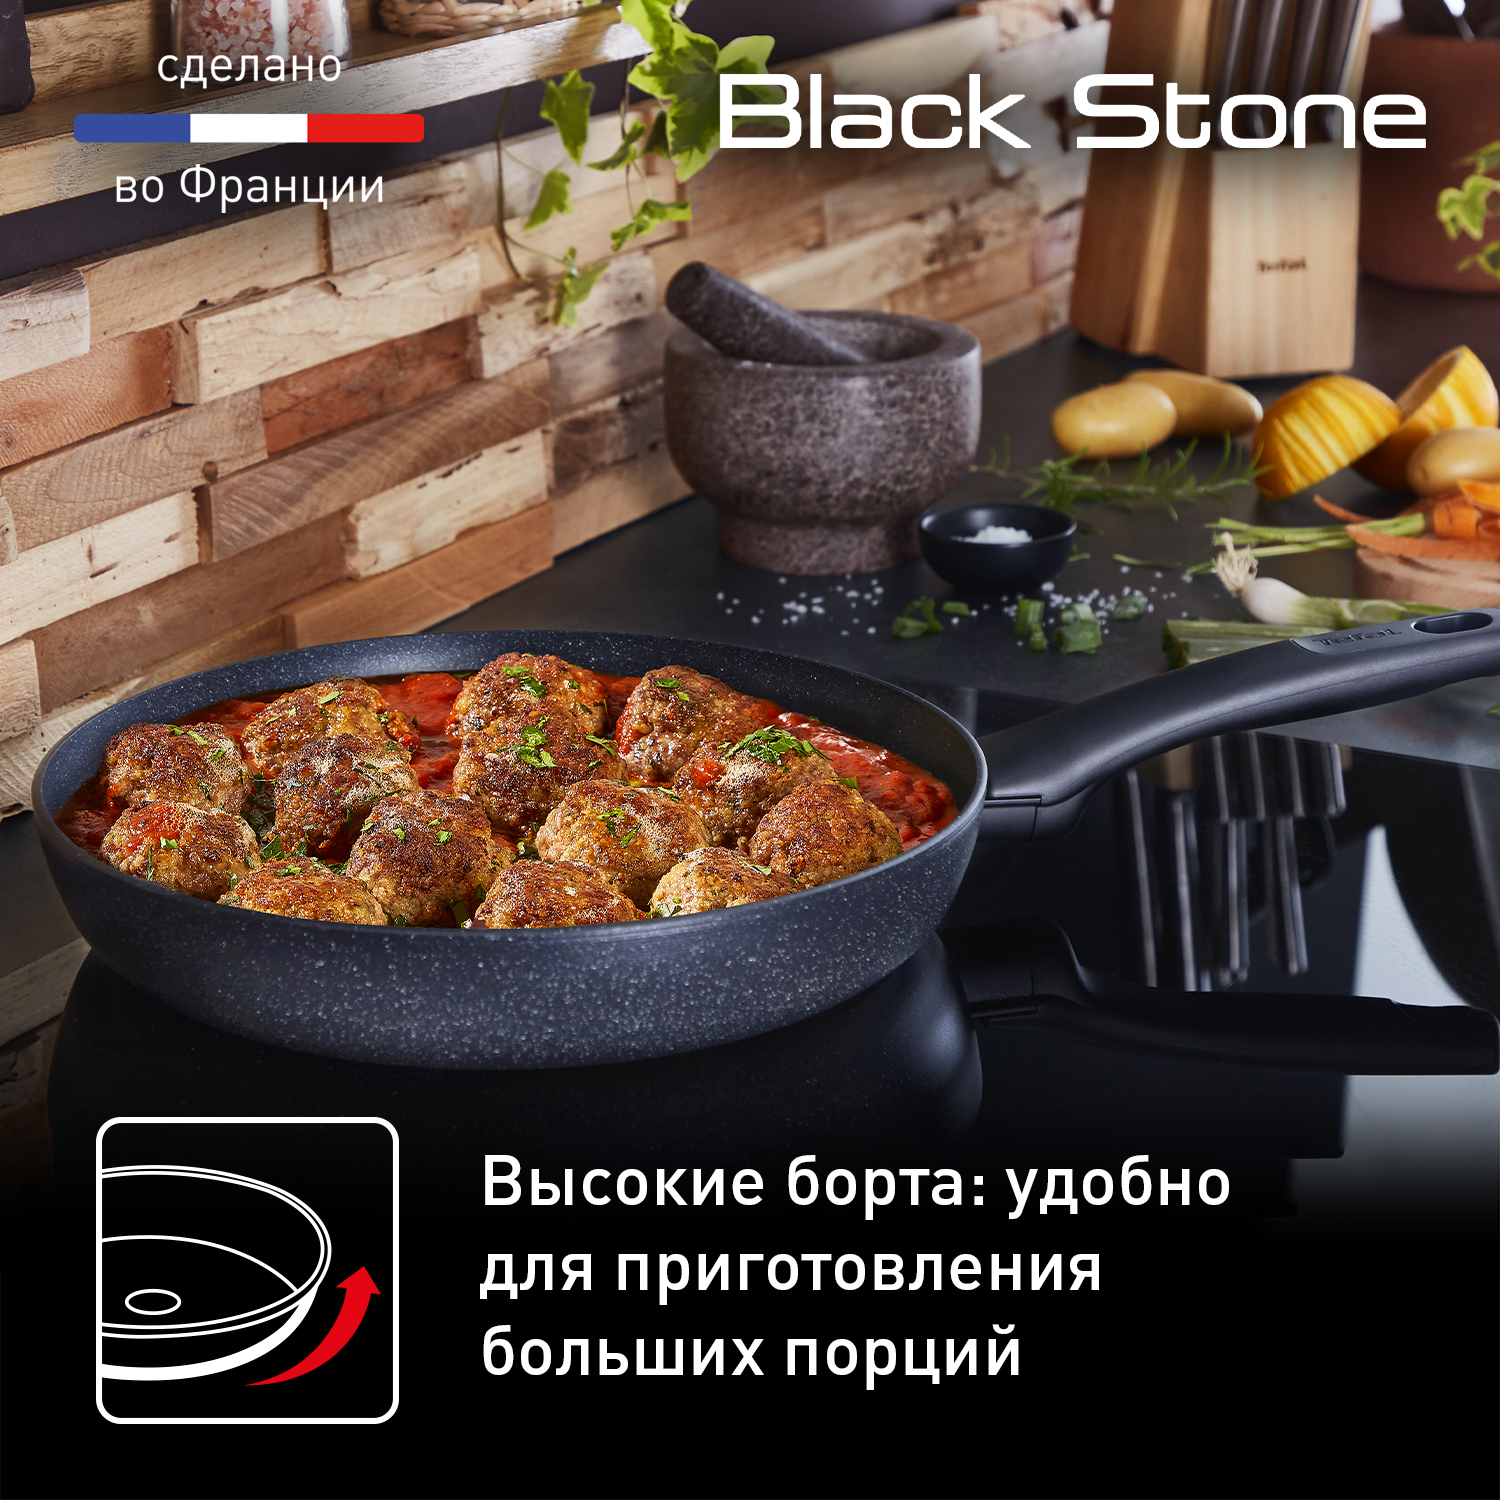 Tefal Black Stone Frying Pan 28 cm (G28106) au meilleur prix sur